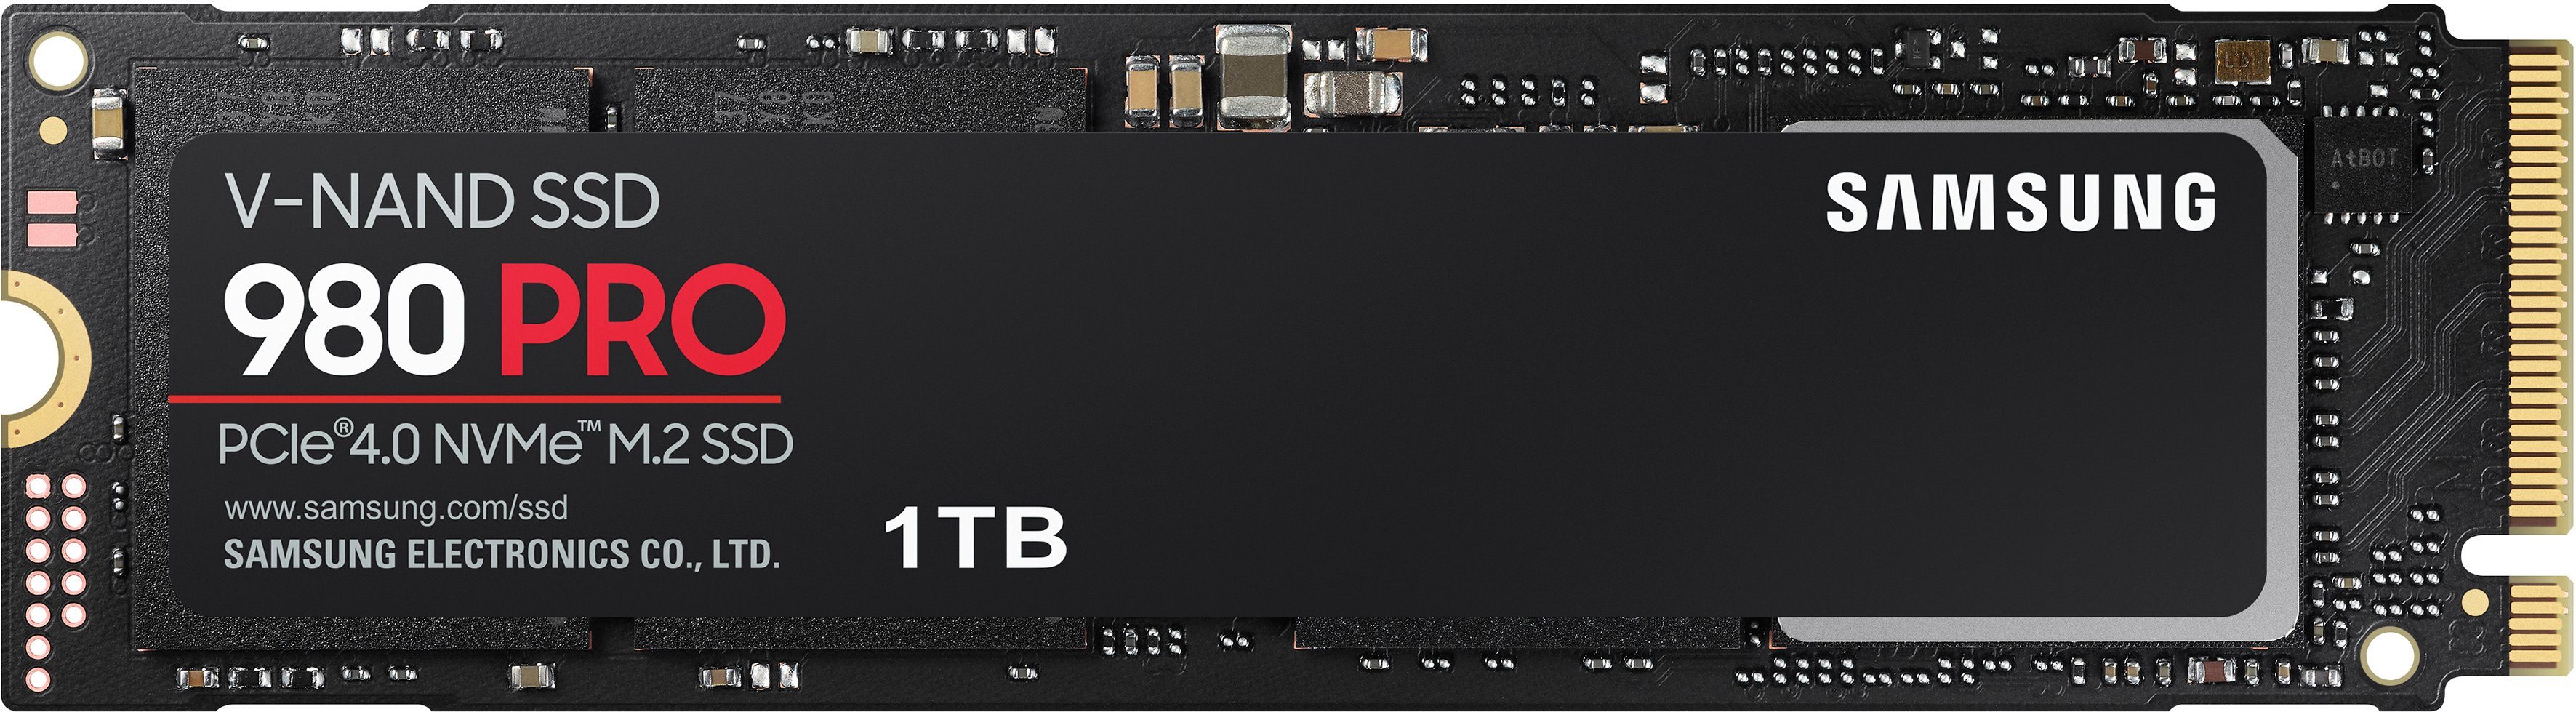 Samsung 980 PRO 1TB SSD interne SSD (1 TB) 7000 MB/S Lesegeschwindigkeit,  5000 MB/S Schreibgeschwindigkeit, Playstation 5 kompatibel, PCIe® 4.0  NVMe™, M.2